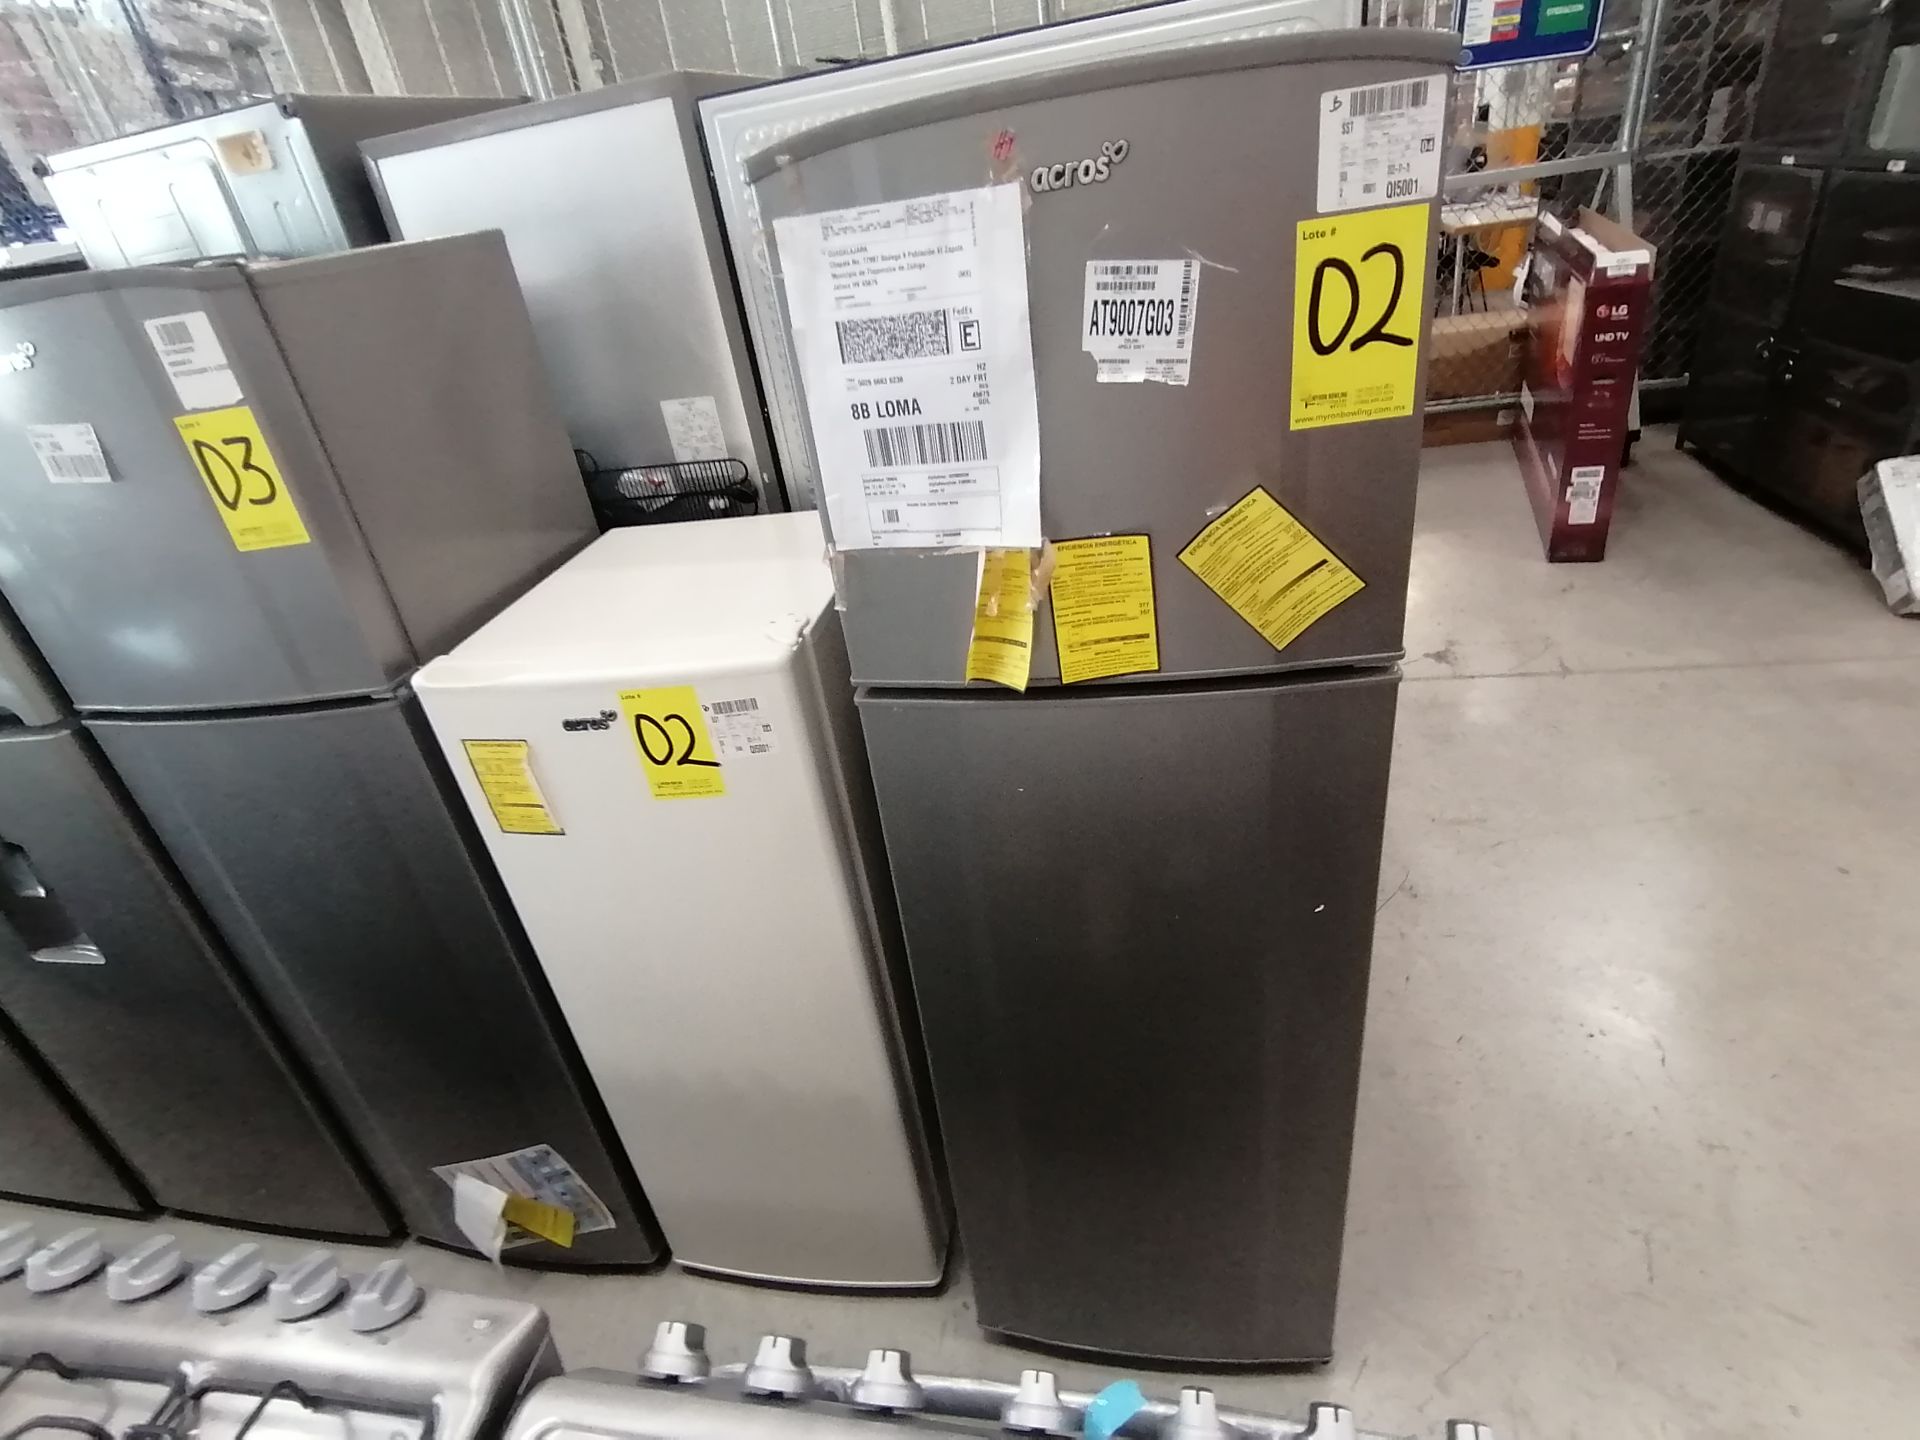 1 Refrigerador Marca Acros, Modelo ERT07TXLT, Serie VRA4436928, Color Blanco, Golpeado, Favor de in - Image 4 of 14